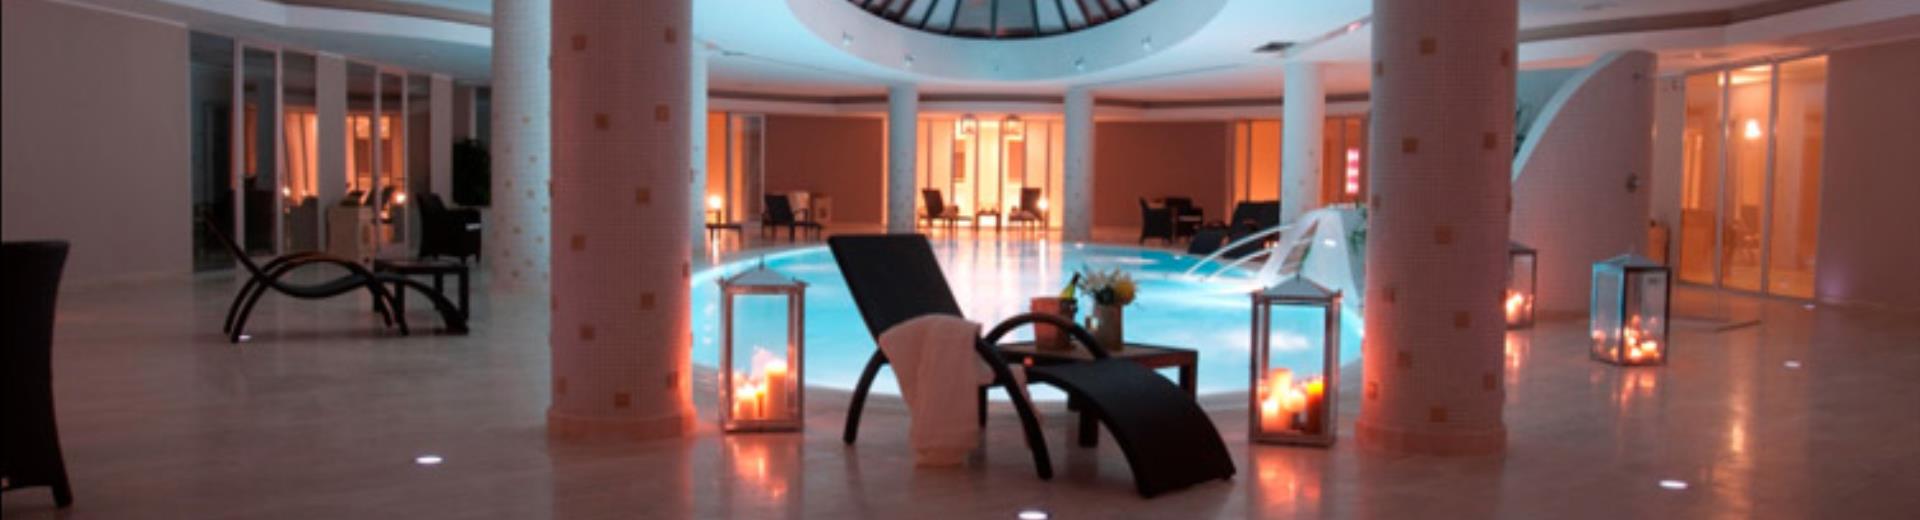 ¿Buscas servicio y hospitalidad para tu estadía en Cosenza - Rende? Escoge el Best Western Premier Villa Fabiano Palace Hotel.